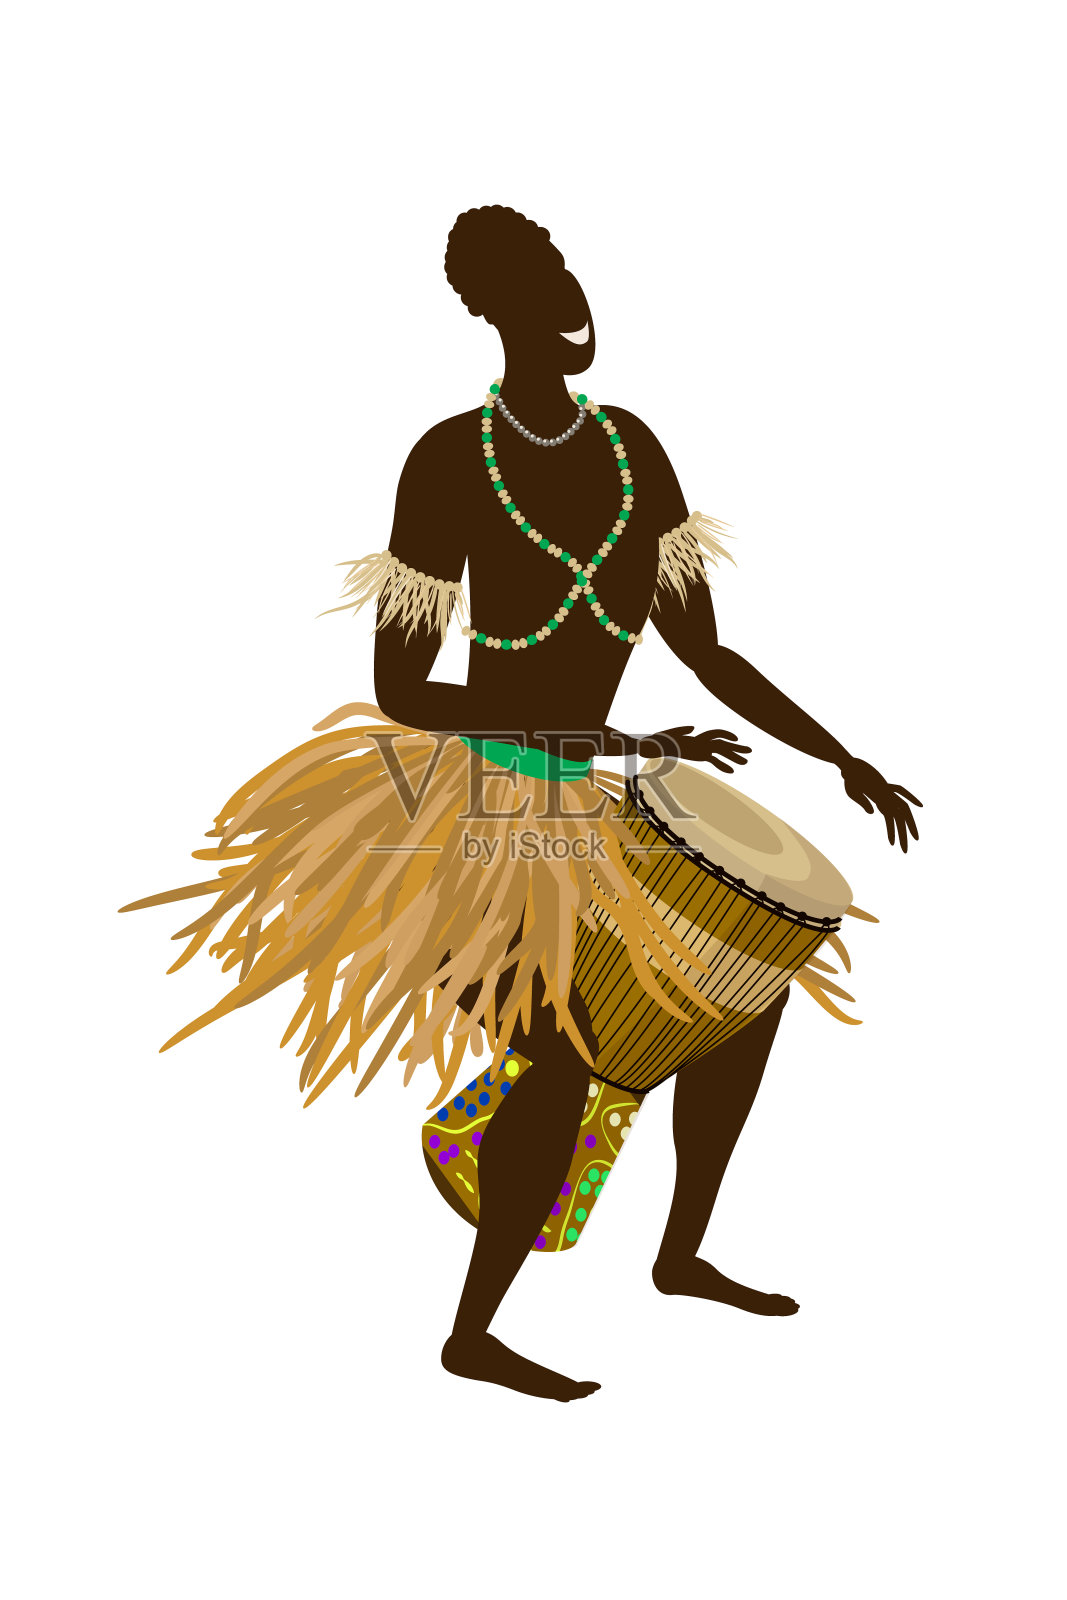 一个穿着民族服装的非洲人演奏民族鼓——djembe。矢量插图在平面风格孤立在白色背景。插画图片素材